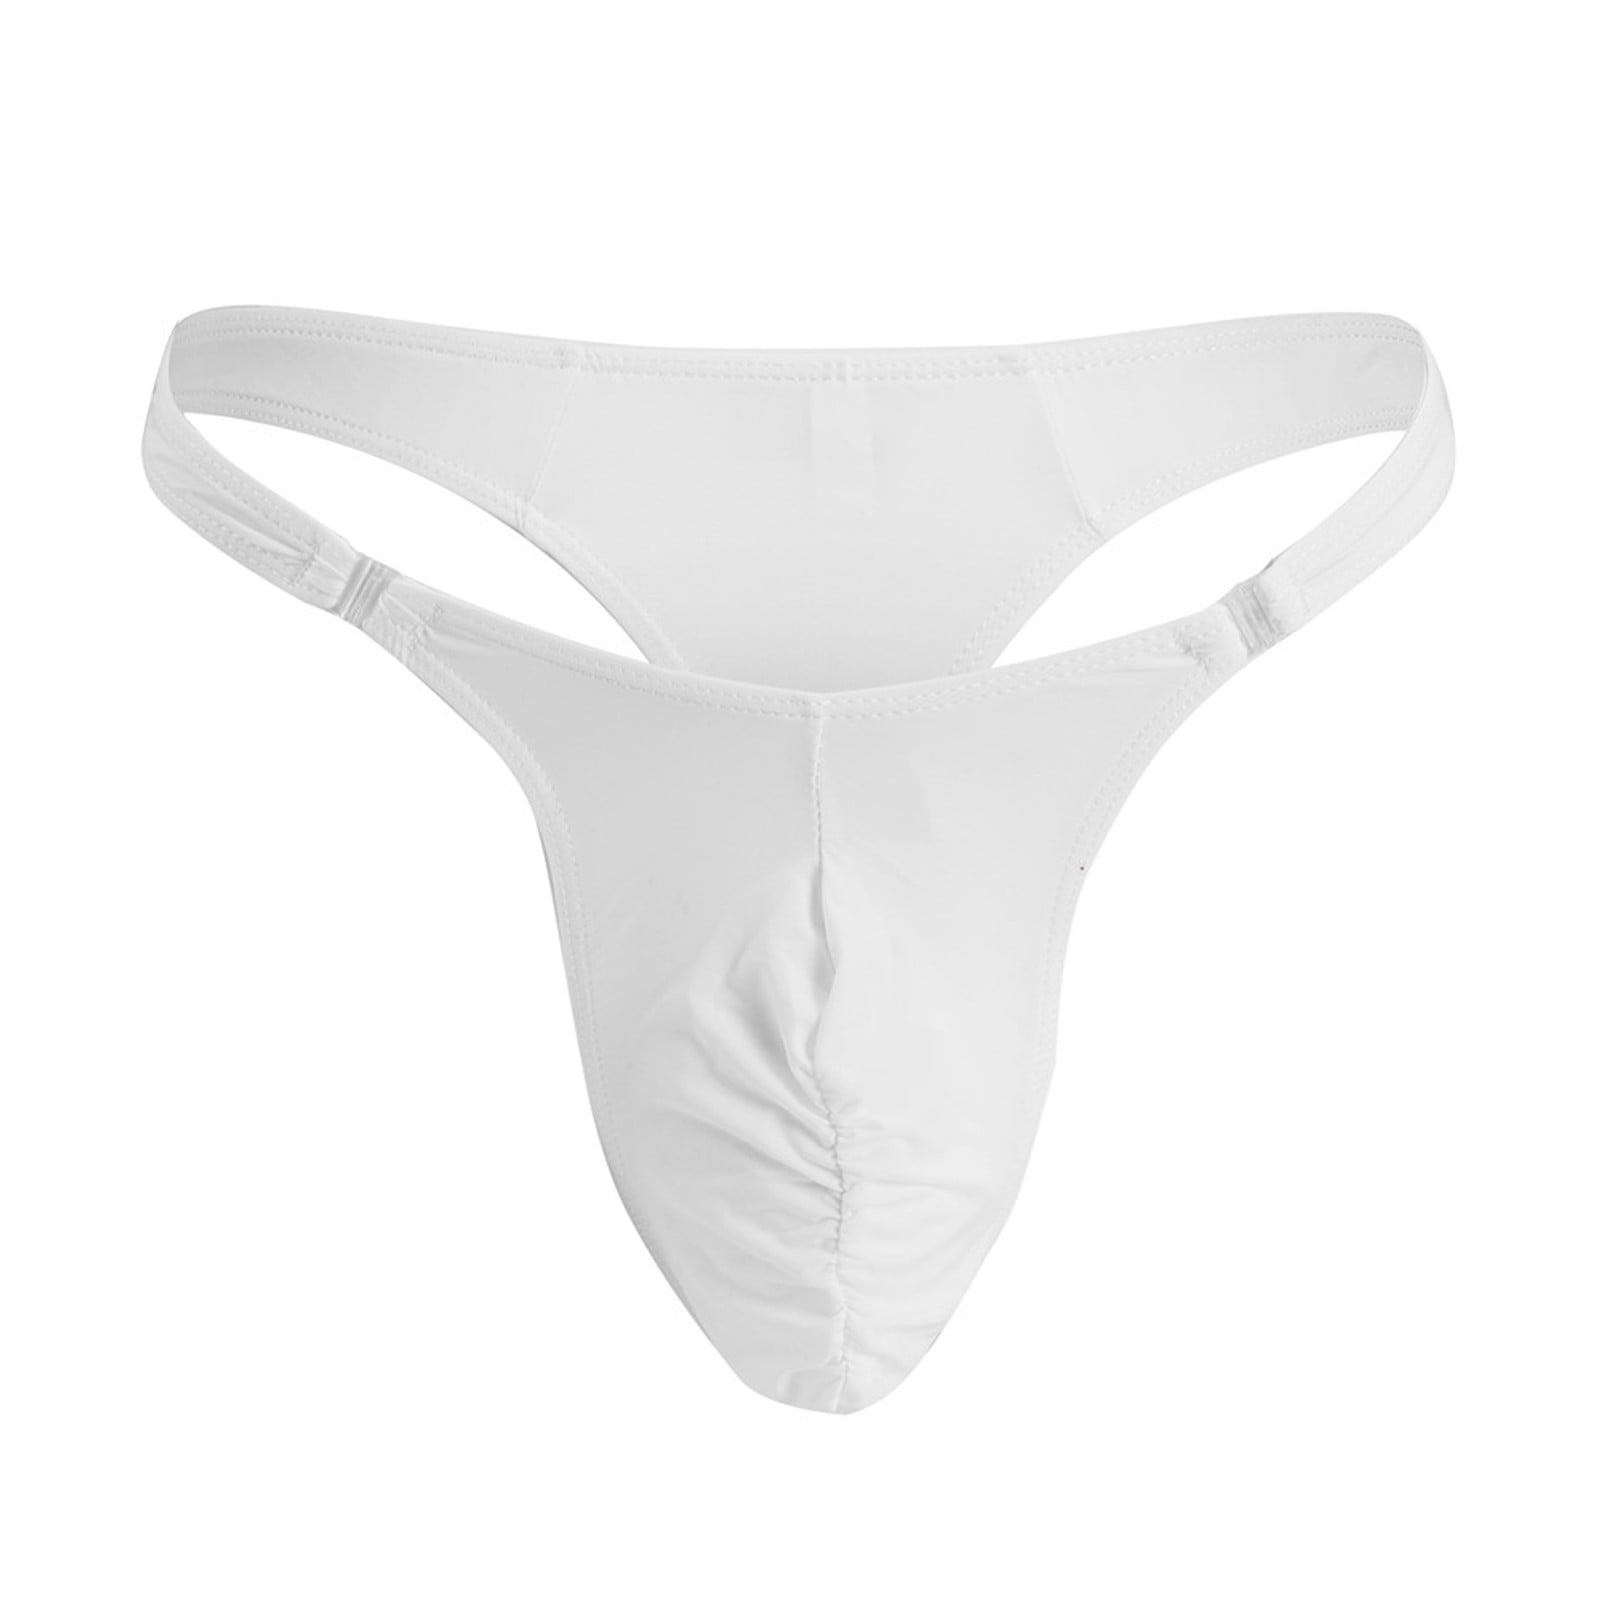 Fabiurt Underwear for Men,Mens Simple Personality Fashion Casual Mini ...